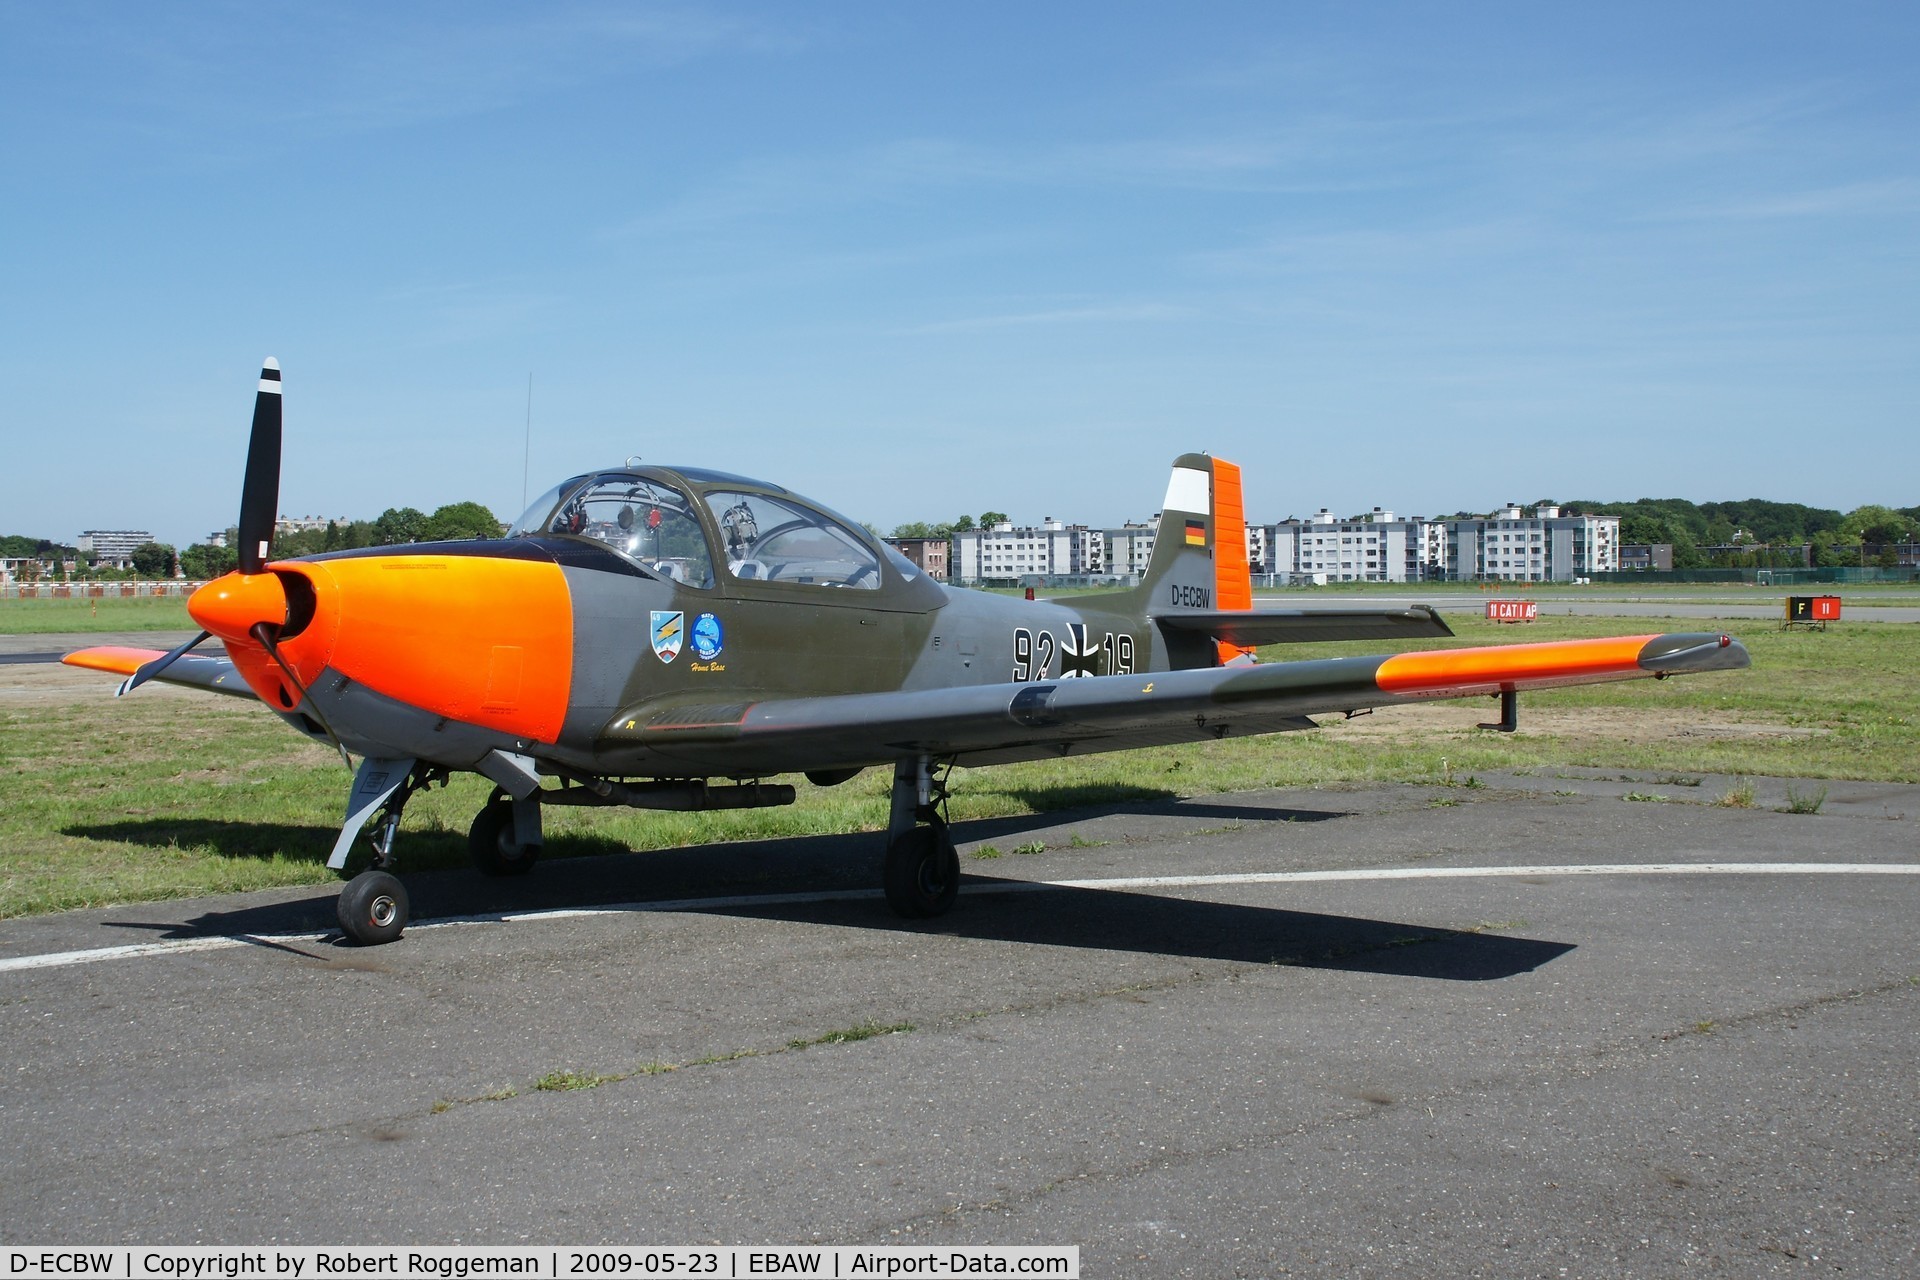 D-ECBW, 1958 Focke-Wulf FWP-149D C/N 316, STAMPE FLY IN 19TH.
92+19.